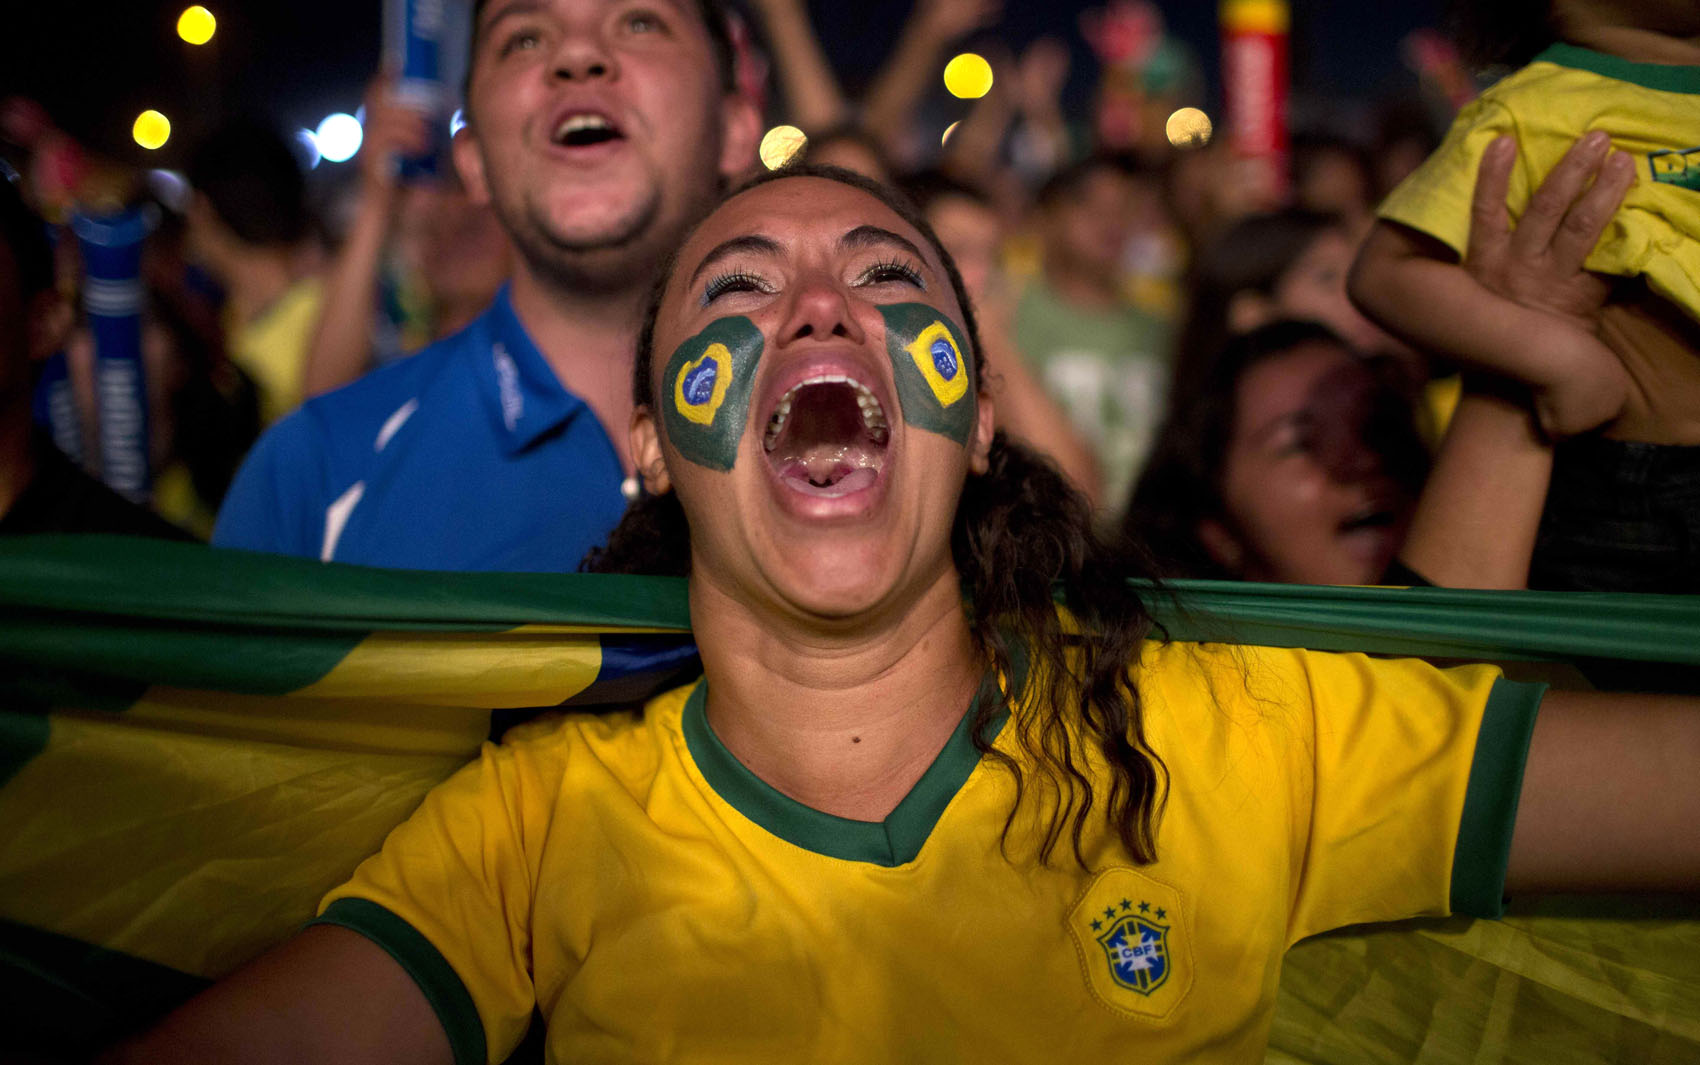 FOTOS: Grito de gol na Copa - fotos em Mundo - g1